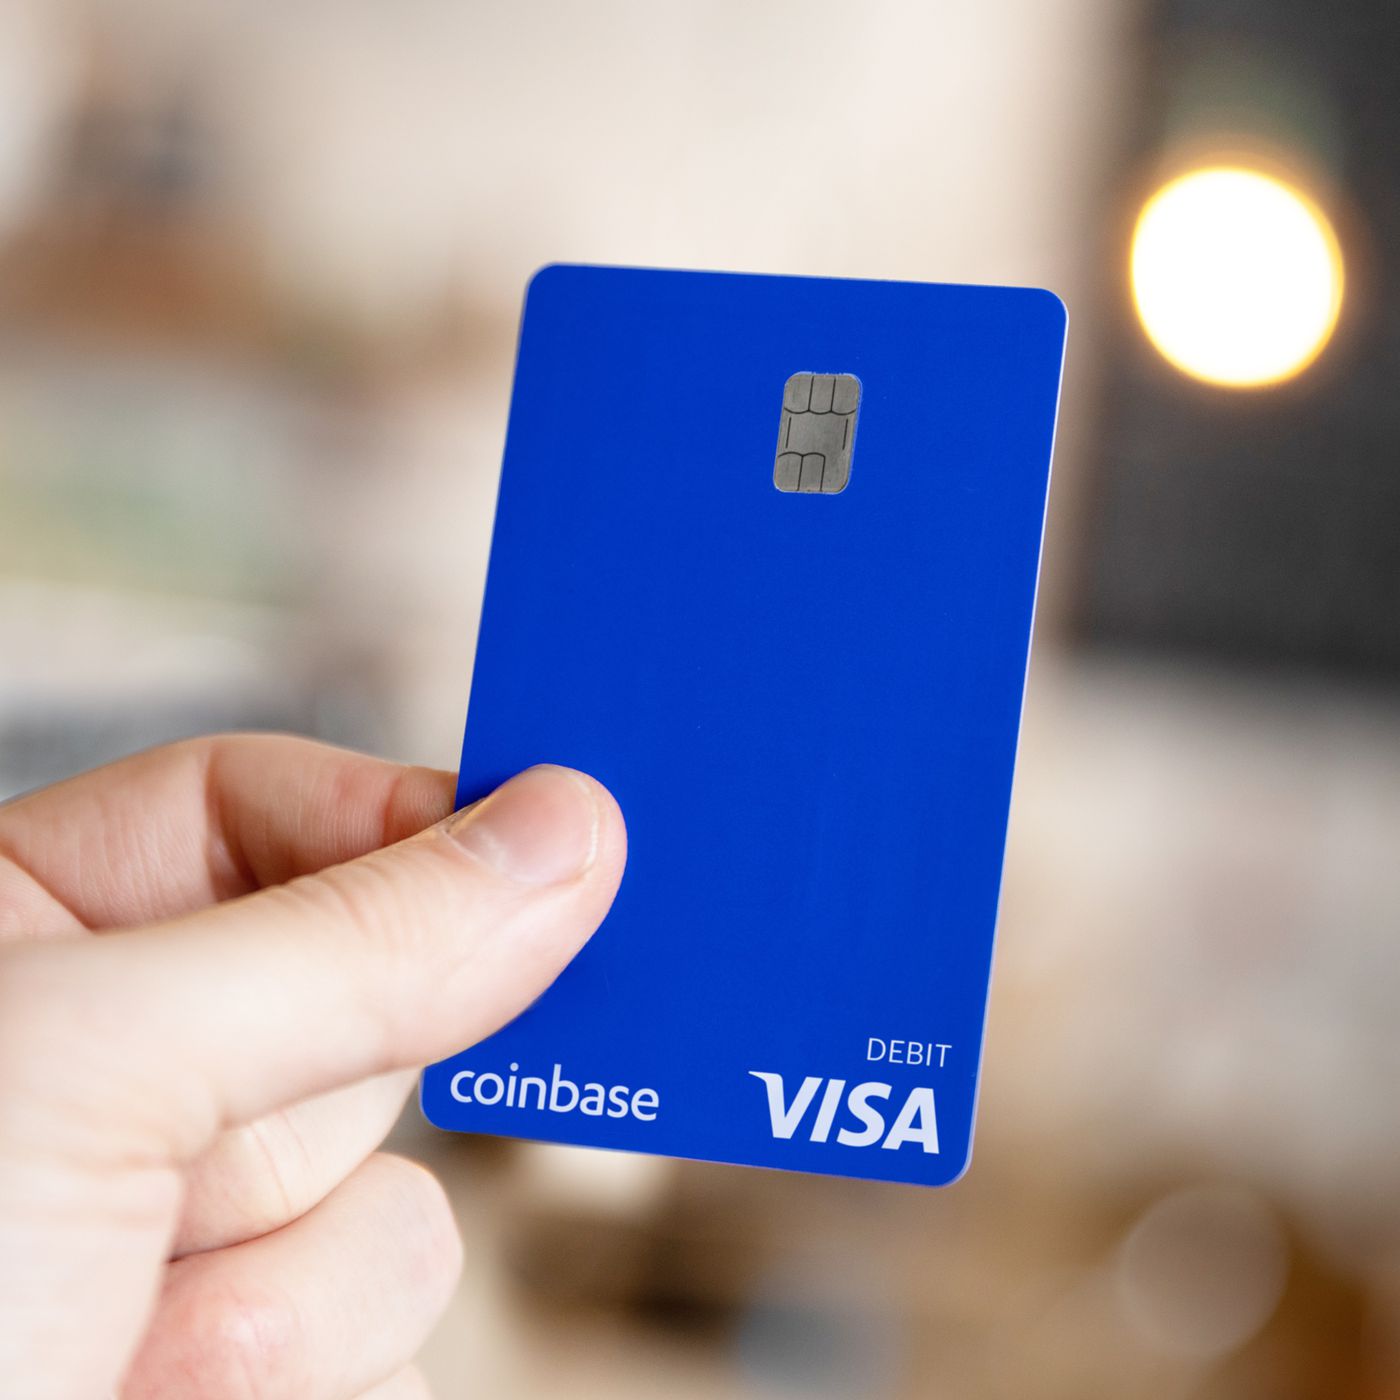 Visa silver debit card|bityard trade bitcoin - Gyakori kérdések